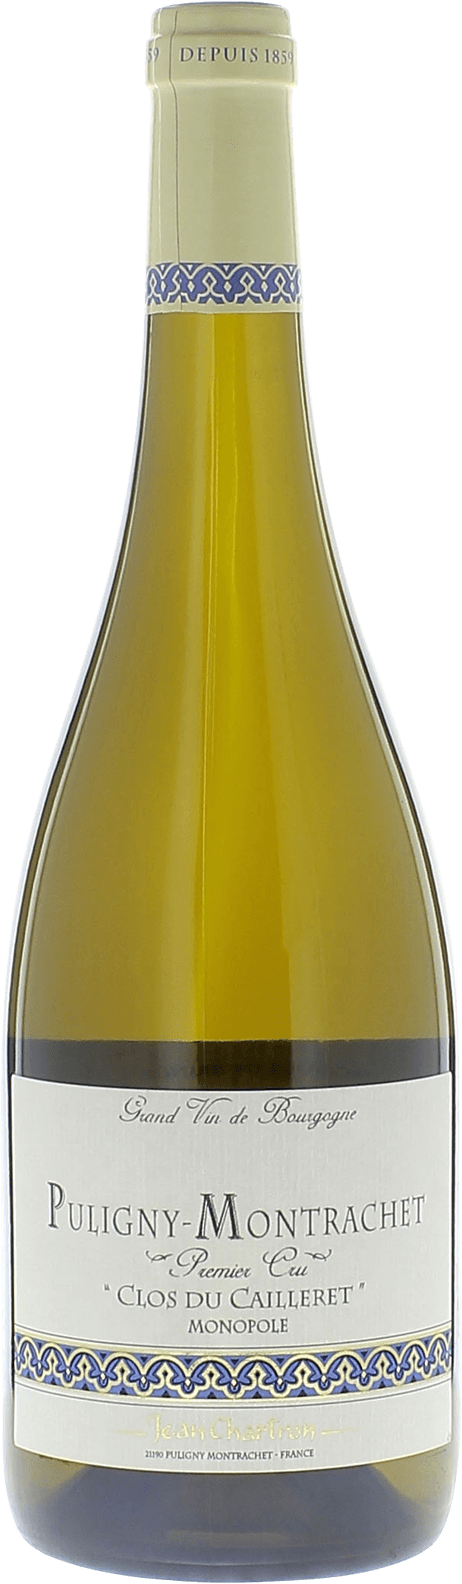 Chassagne montrachet 1er cru caillerets 2016 Domaine CHARTRON Jean, Bourgogne blanc